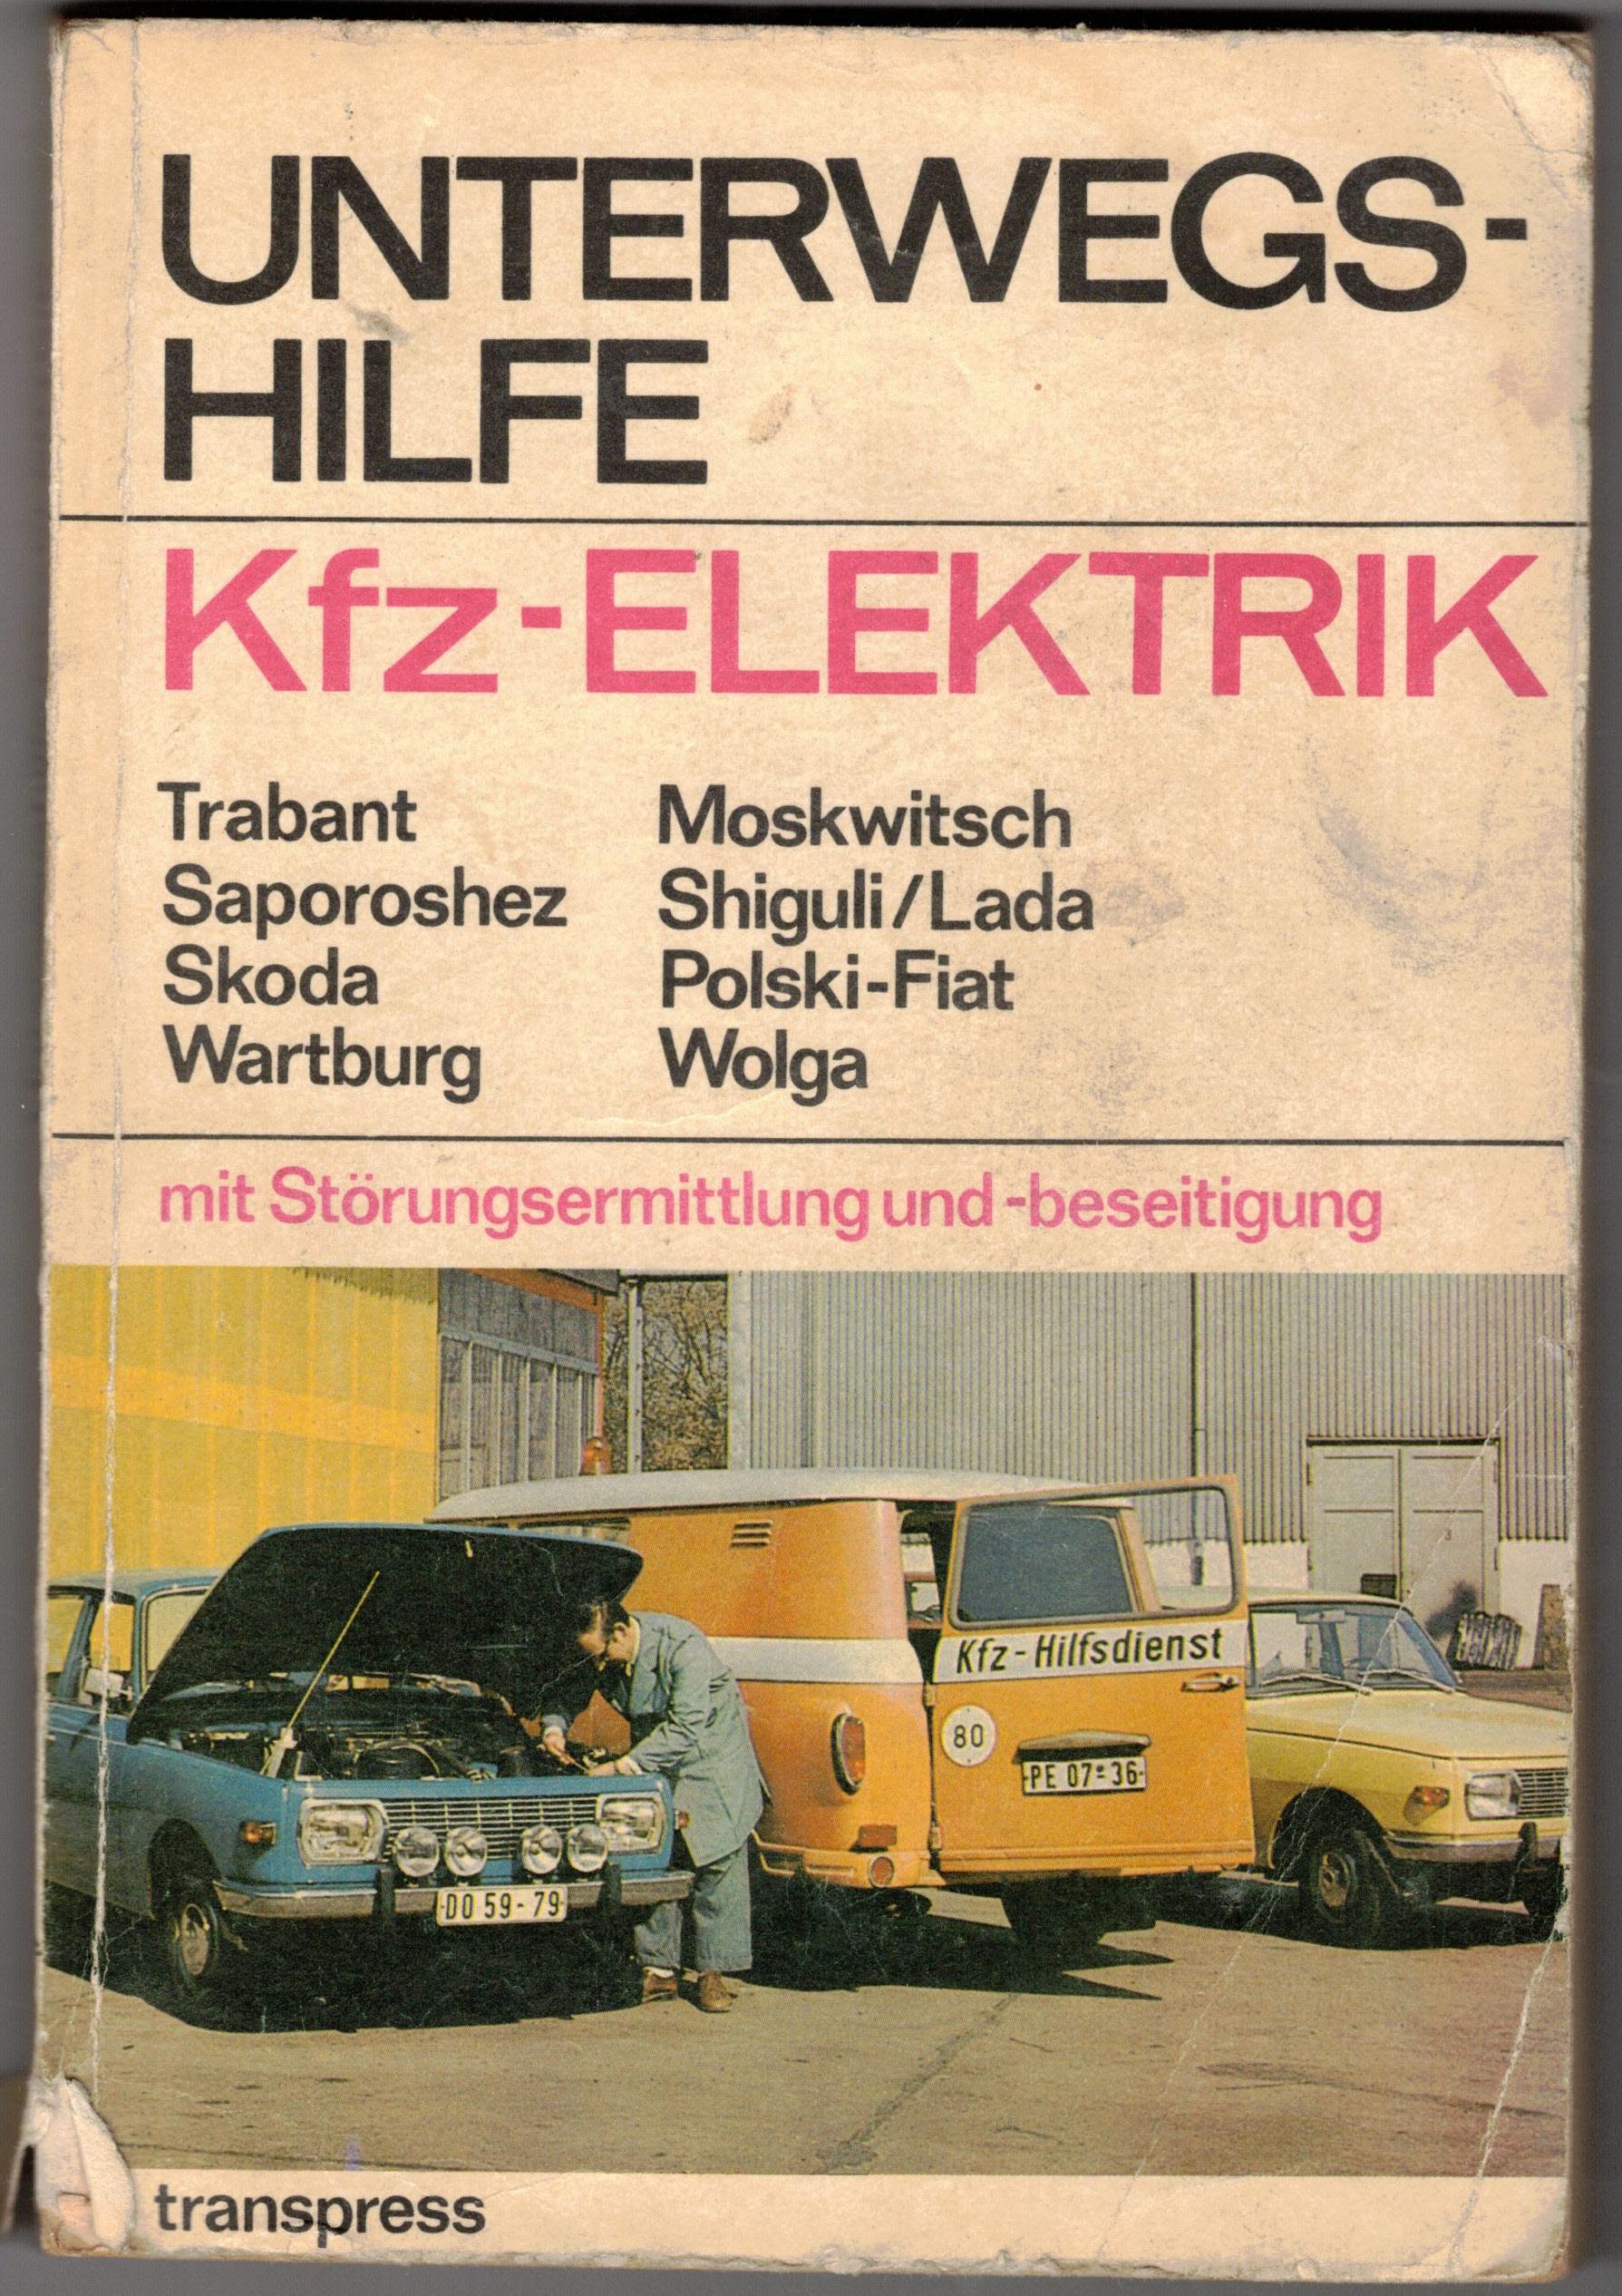 Unterwegs - Hilfe Kfz Elektrik Trabant Moskwitsch Skoda Wartburg 1977 Transpress